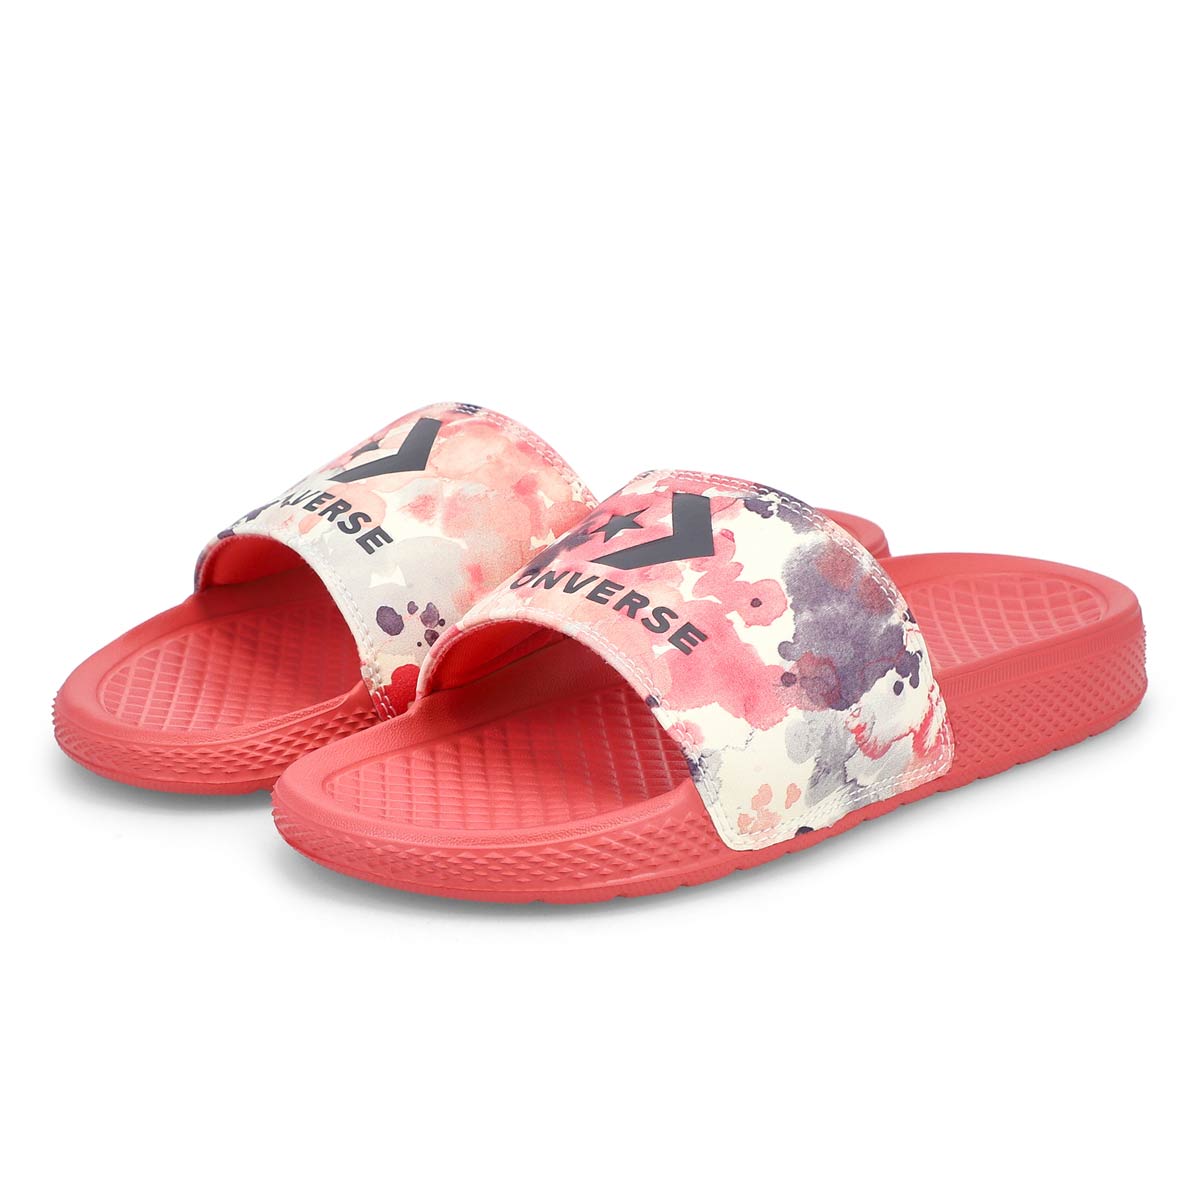 Women's All Star Slide Sandal - Terracotta pink